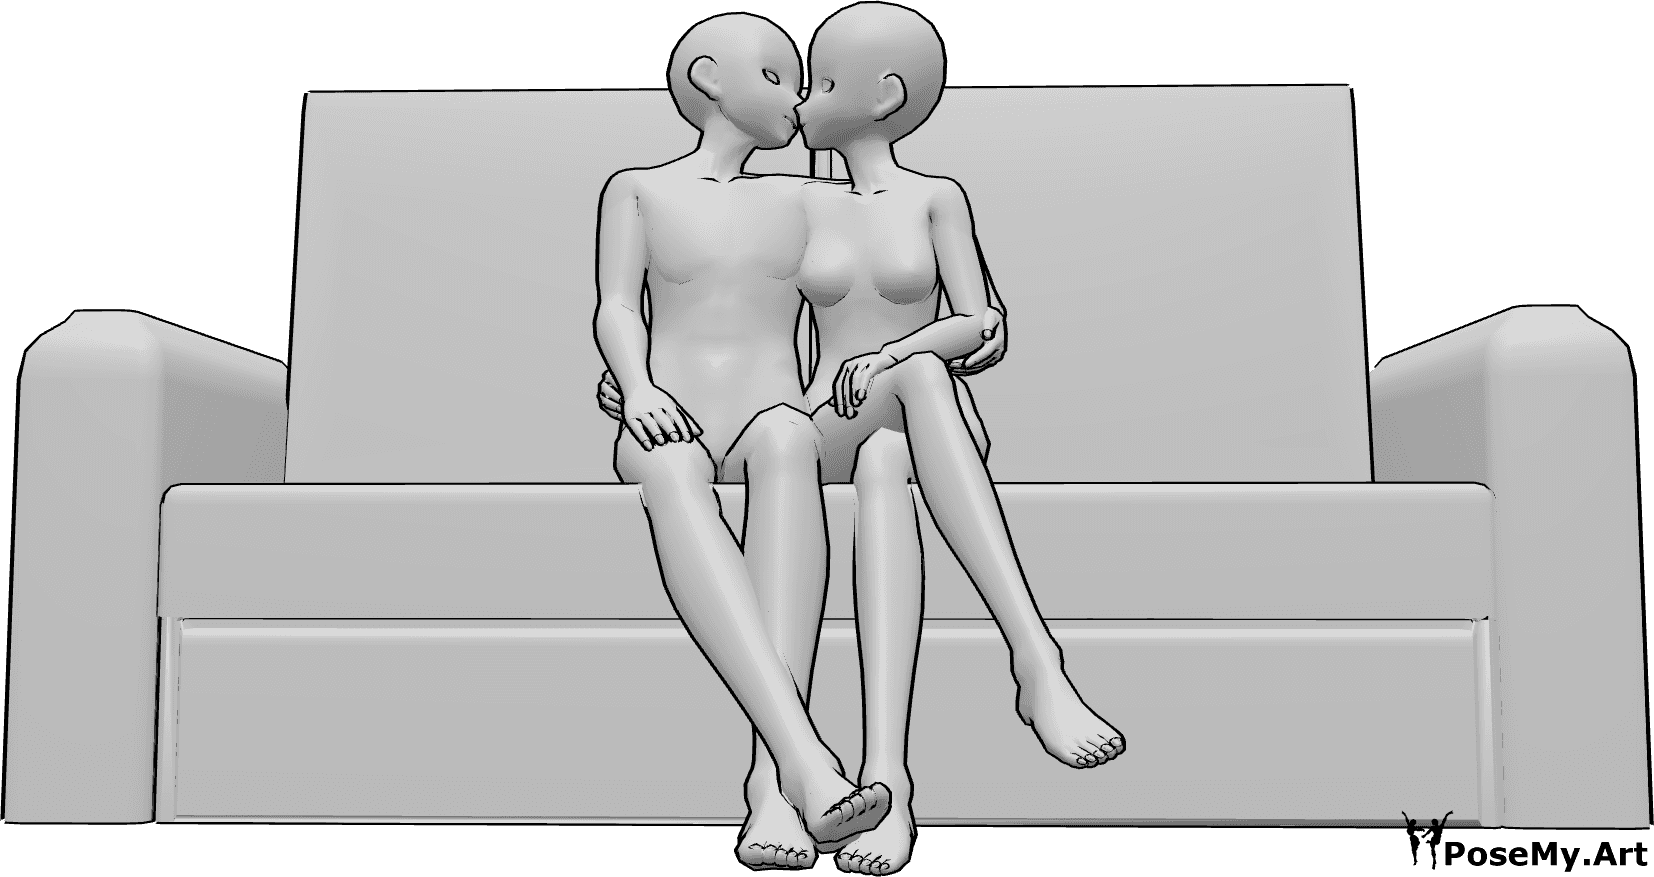 Referencia de poses- Anime sentado besando pose - Anime pareja está sentada en el sofá y besándose, anime pareja besándose pose